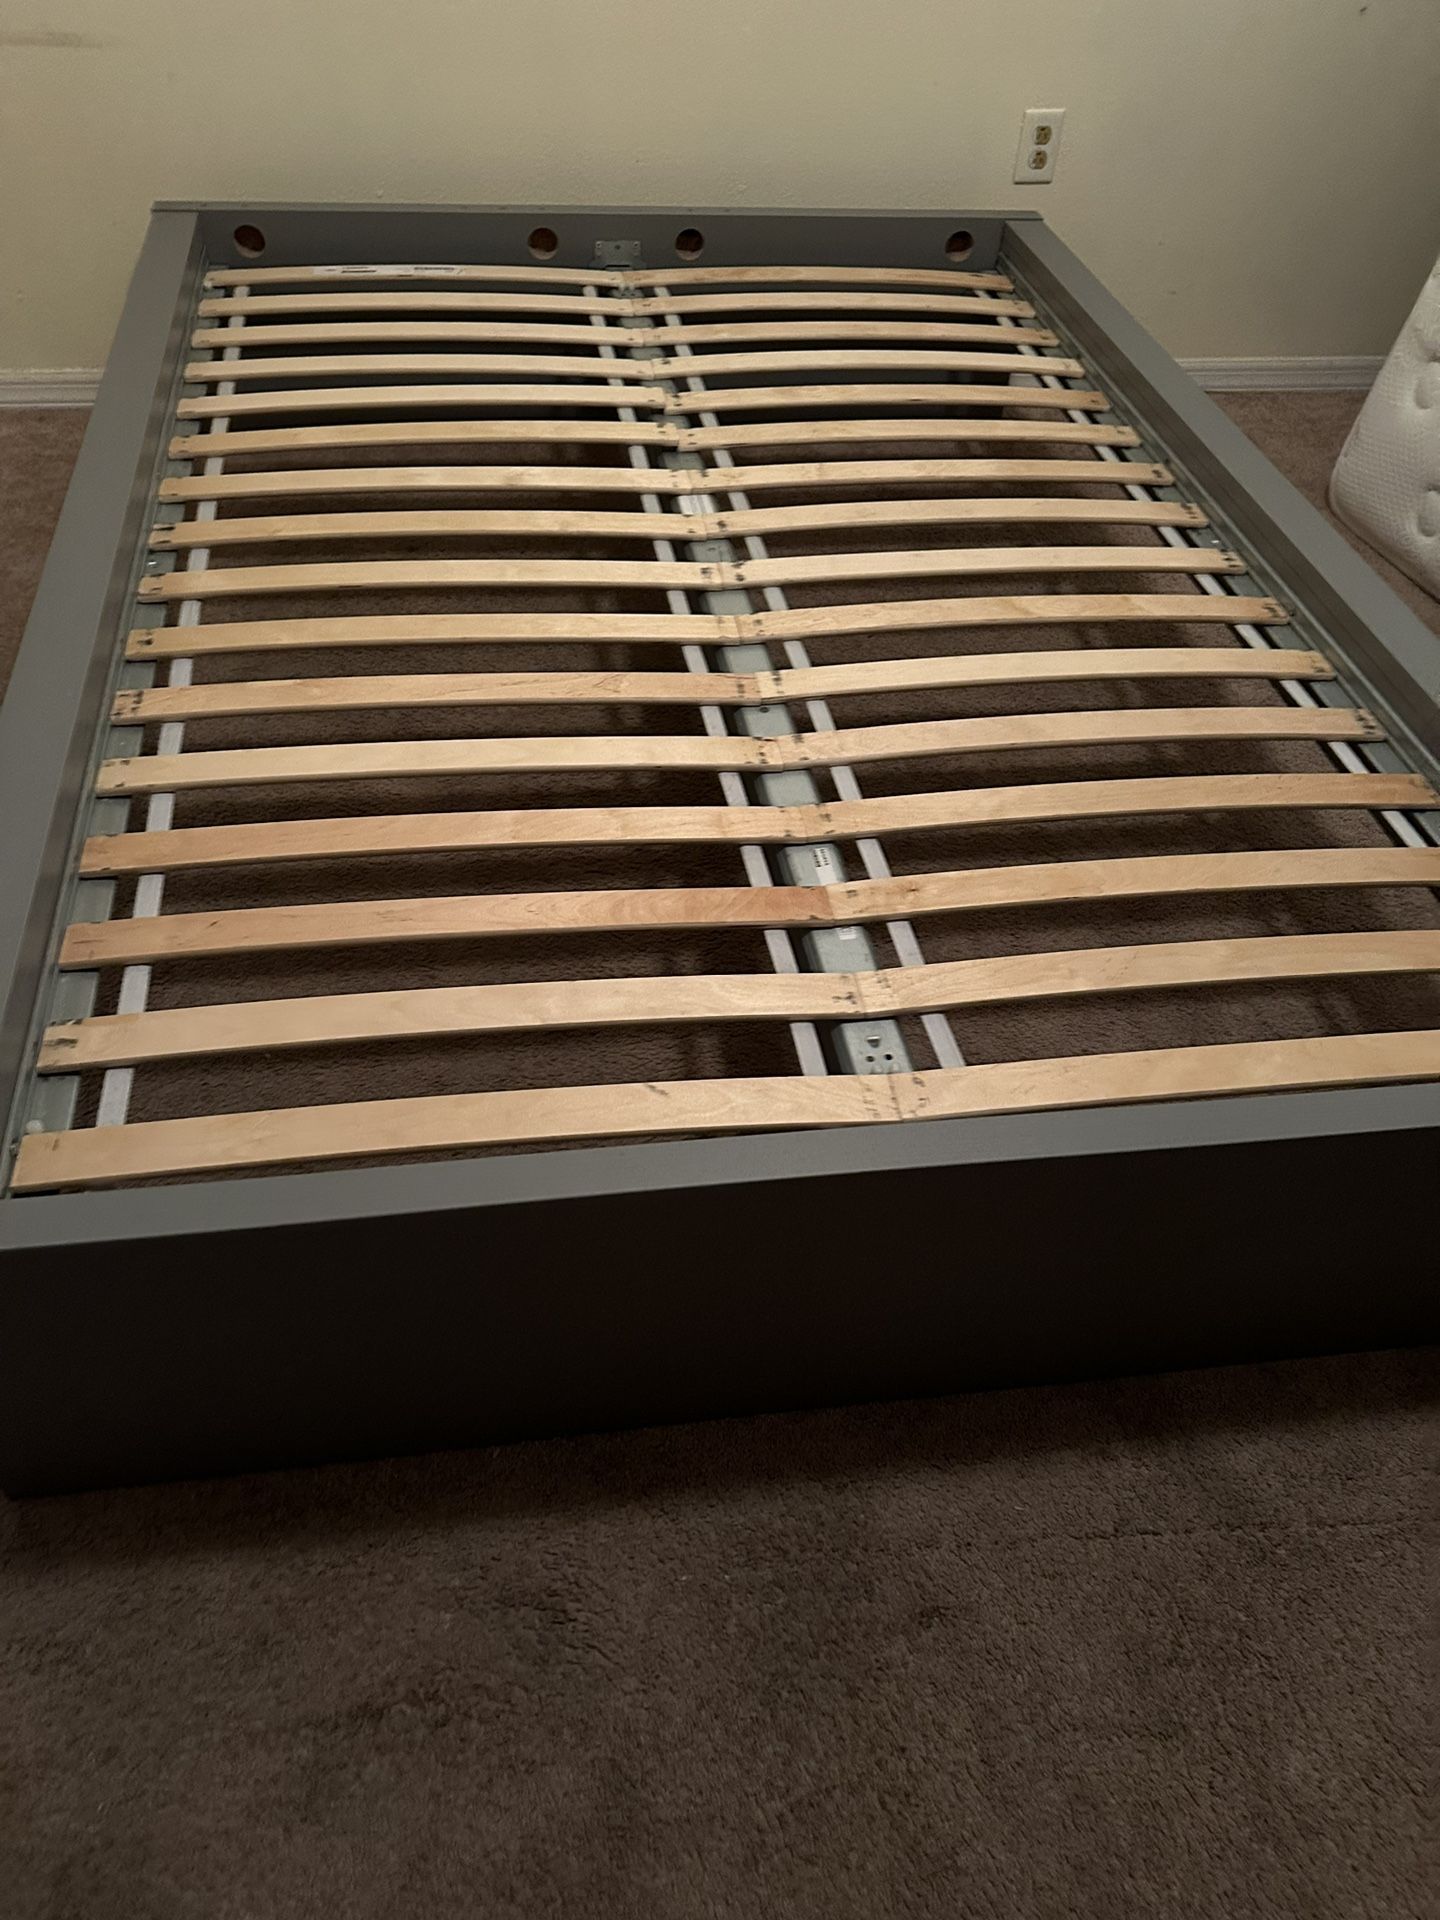 Full Size Platform Bed Frame